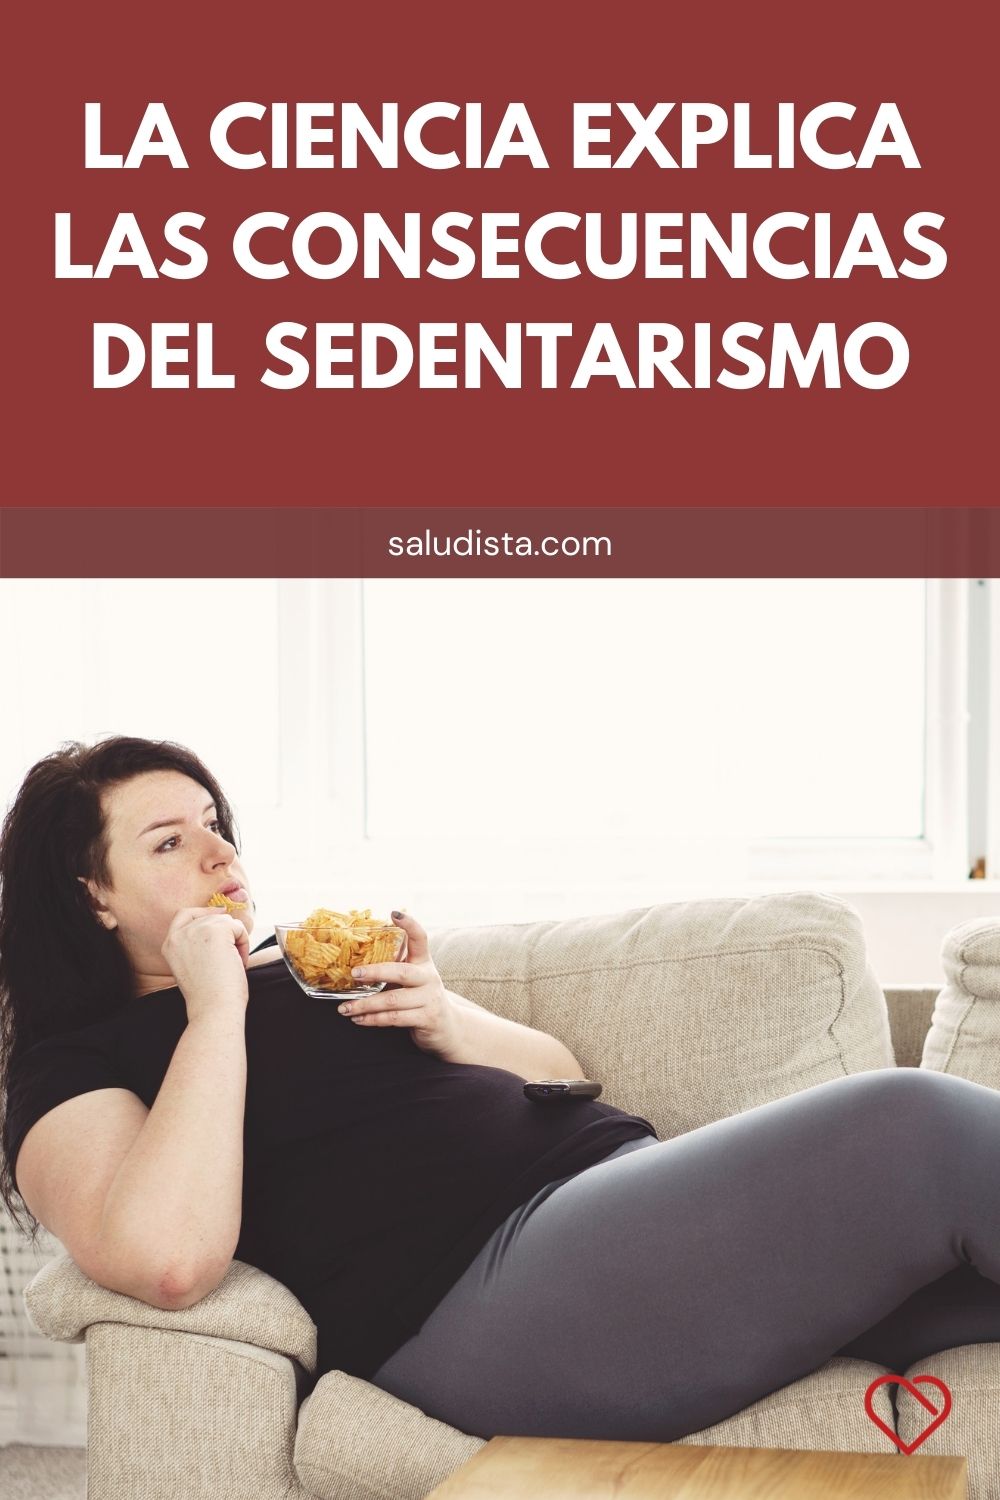 La ciencia explica las consecuencias del sedentarismo